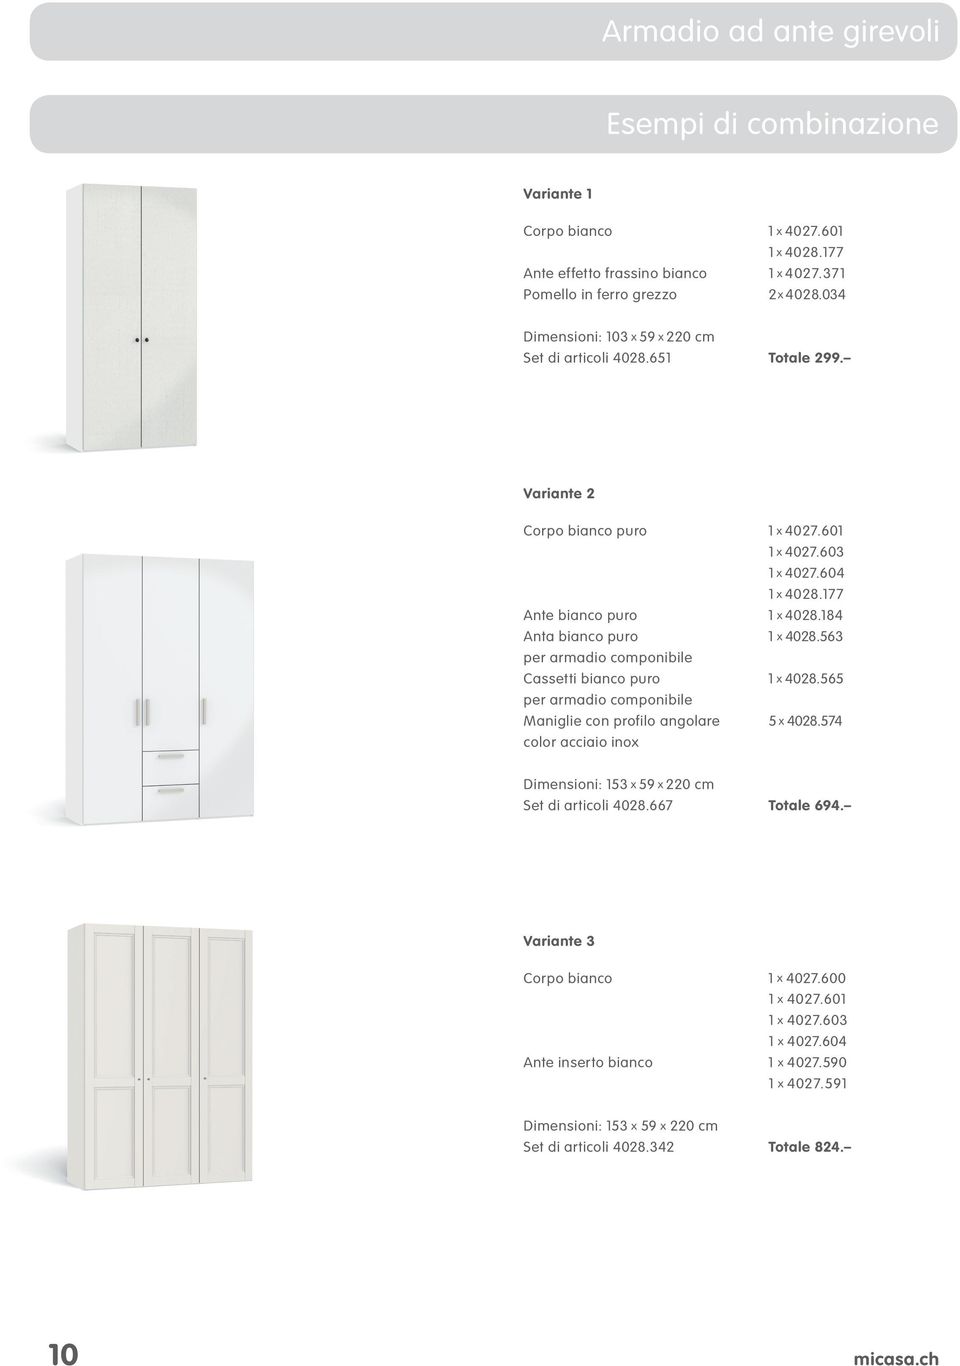 84 Anta bianco puro x 4028.563 per armadio componibile Cassetti bianco puro x 4028.565 per armadio componibile Maniglie con profilo angolare 5 x 4028.